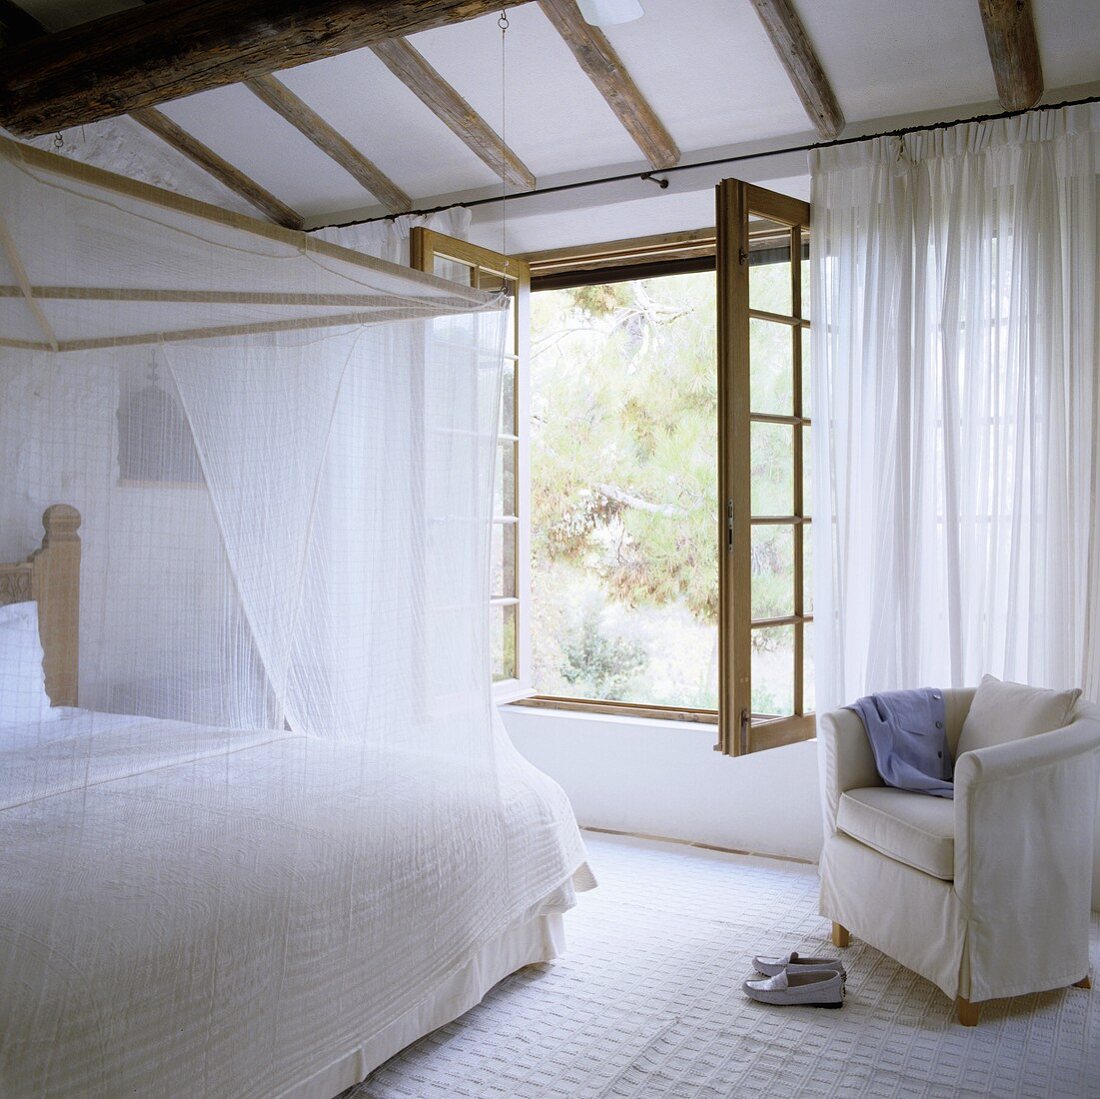 Weisser Schlafraum im Landhaus - Himmelbett mit leichtem Stoff vor geöffnetem Fenster